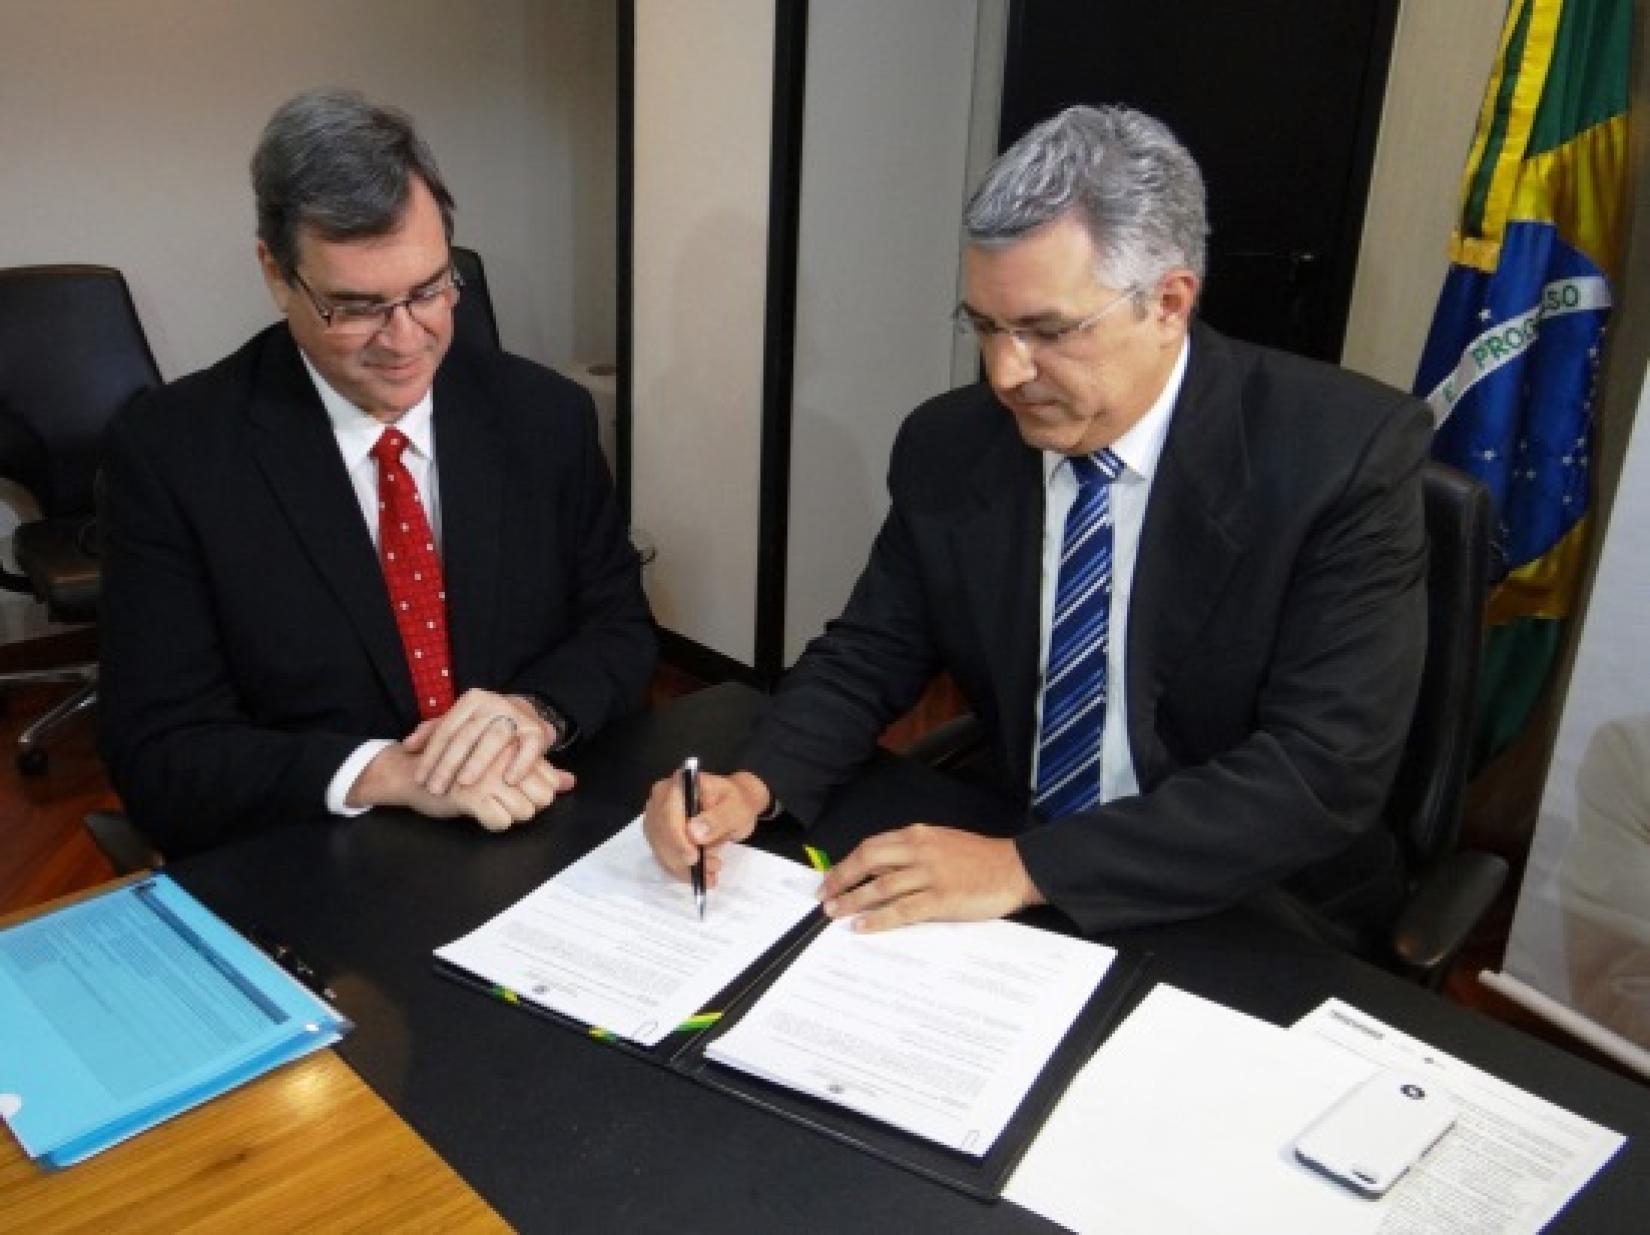 Representantes da OPAS e do Ministério da Saúde brasileiro assinam o termo de cooperação. Foto: OPAS Brasil